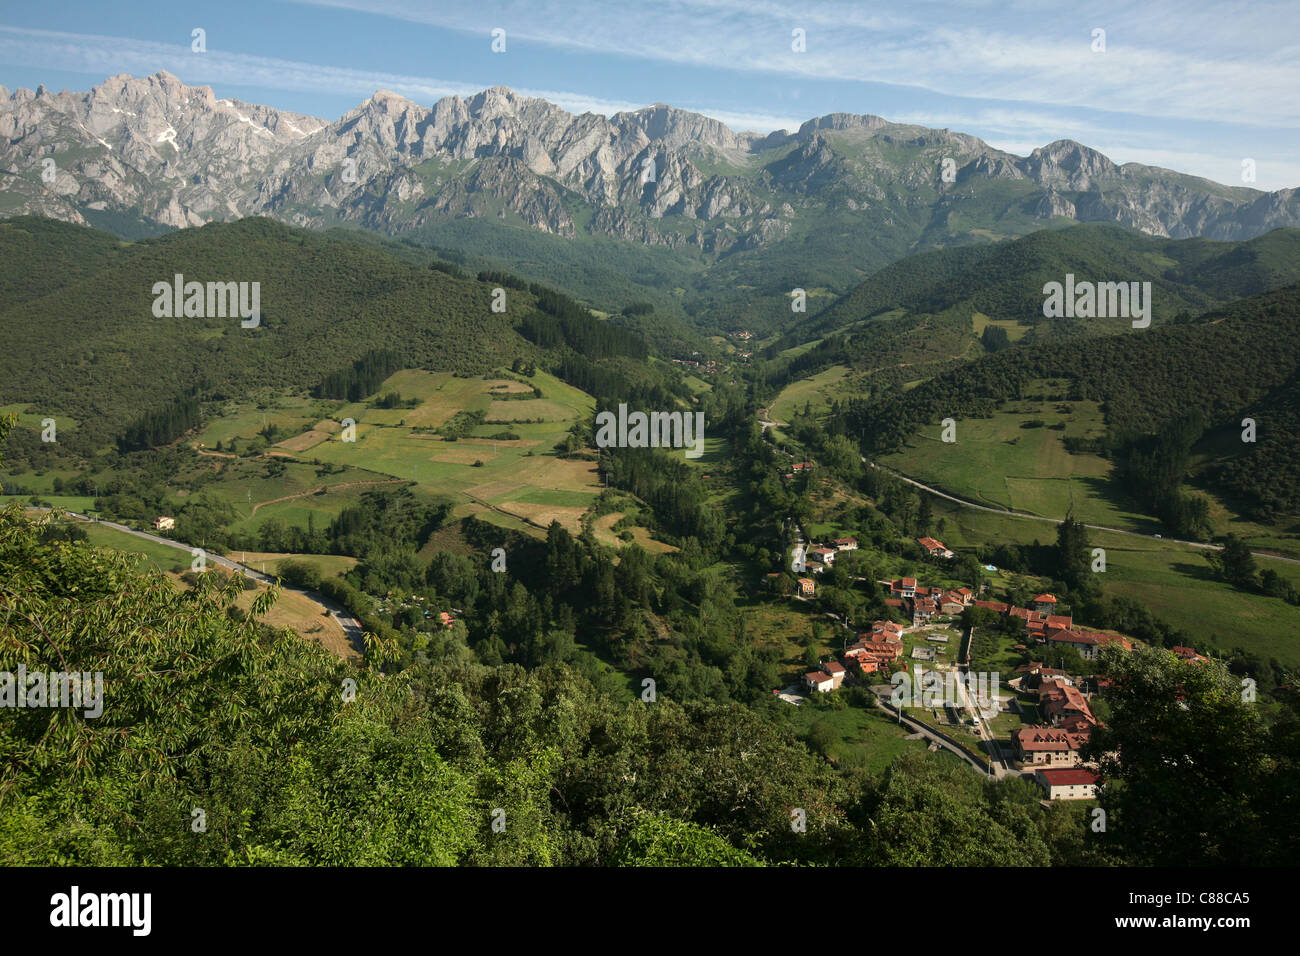 Village de Turieno au pied de la chaîne de montagnes Picos de Europa dans les monts Cantabriques, en Cantabrie, Espagne. Banque D'Images